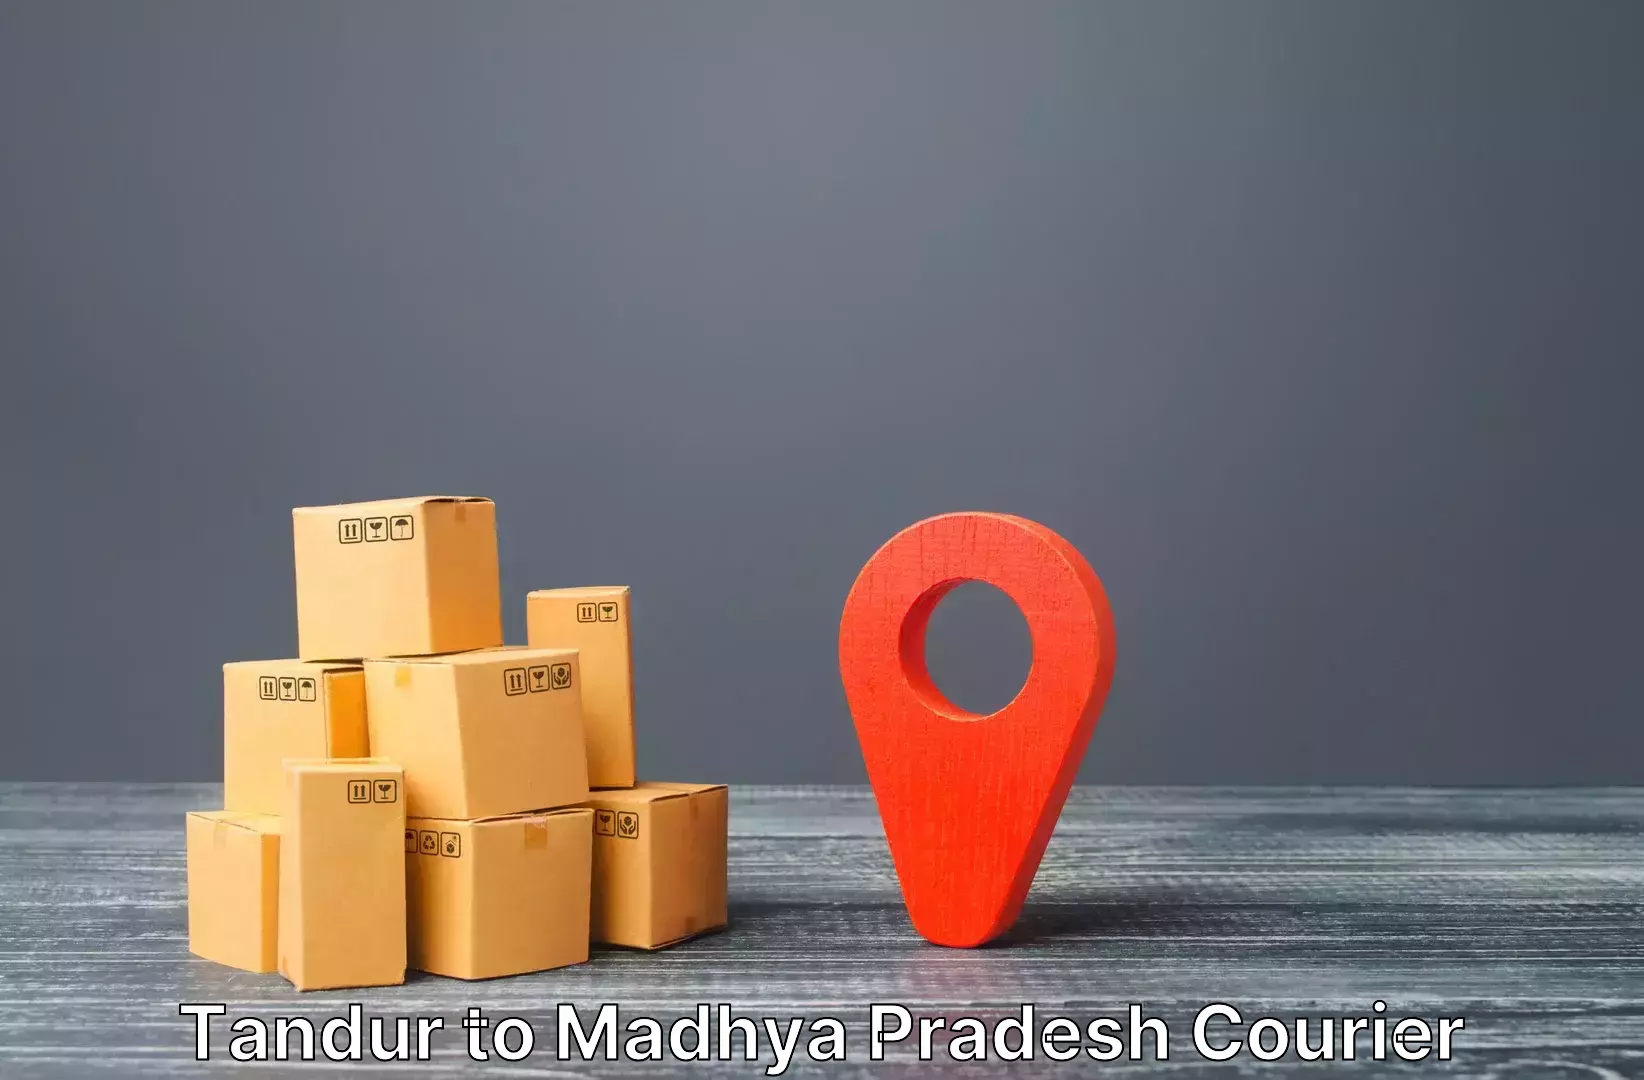 Electronic items luggage shipping in Tandur to Niwari